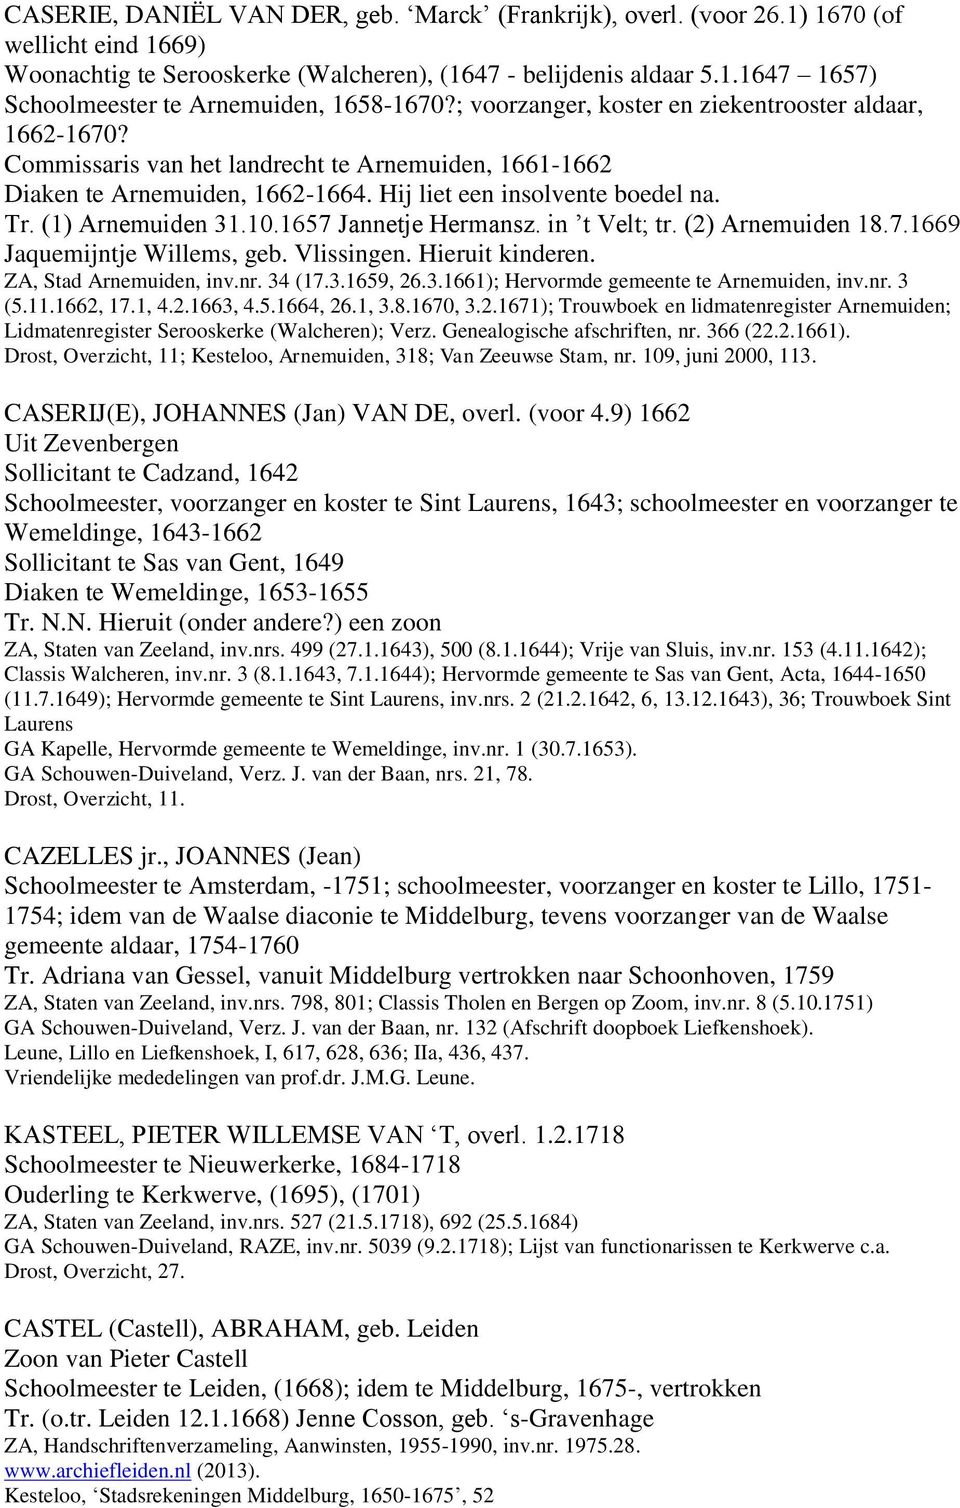 (1) Arnemuiden 31.10.1657 Jannetje Hermansz. in t Velt; tr. (2) Arnemuiden 18.7.1669 Jaquemijntje Willems, geb. Vlissingen. Hieruit kinderen. ZA, Stad Arnemuiden, inv.nr. 34 (17.3.1659, 26.3.1661); Hervormde gemeente te Arnemuiden, inv.